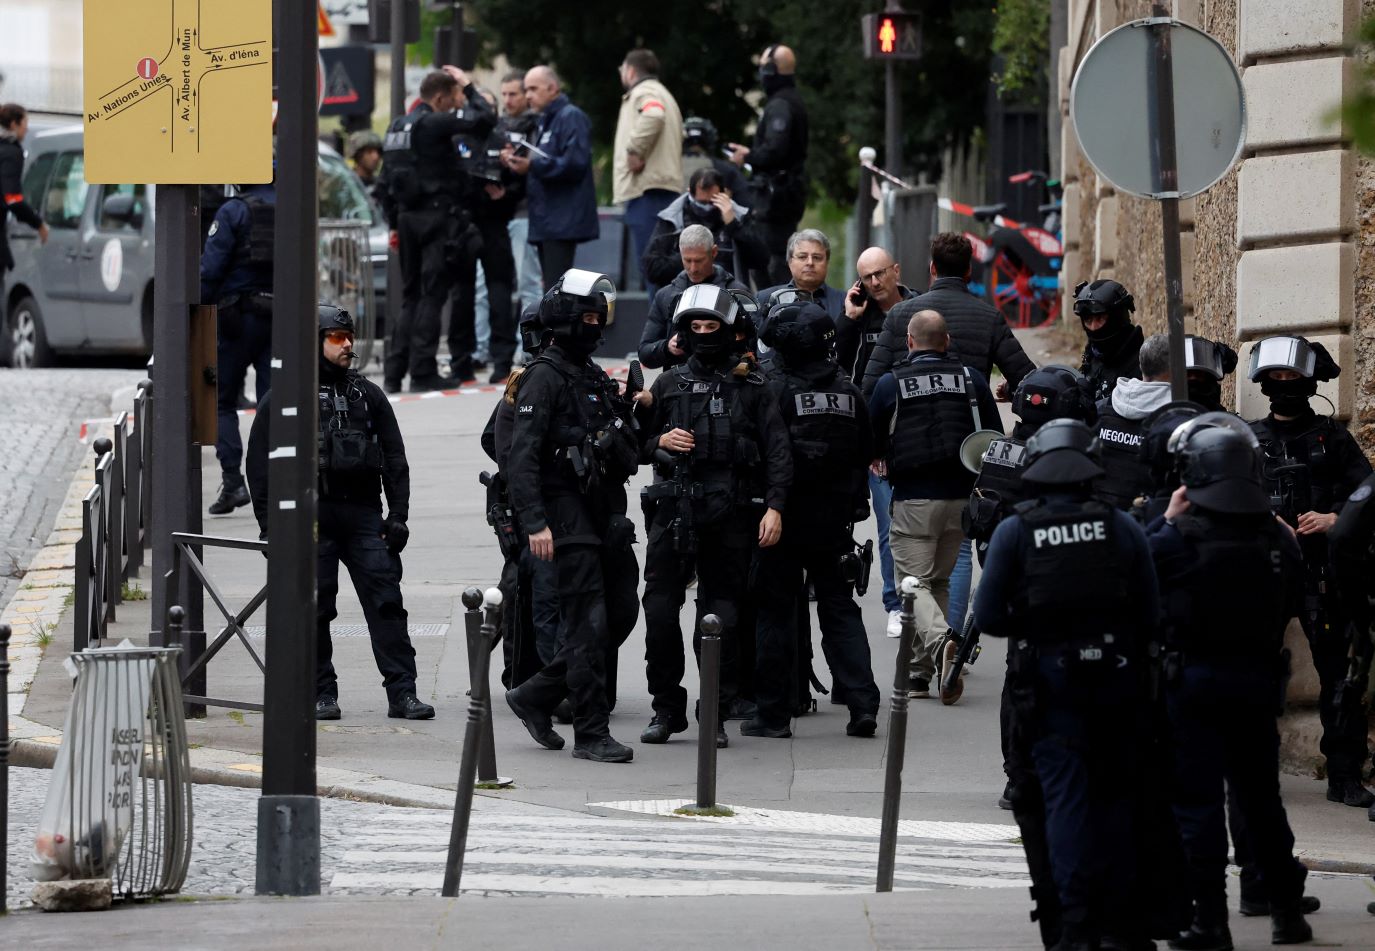 שוטרים סמוך לקונסוליה האיראנית בפריז, באירוע בו אדם איים לפוצץ את עצמו (צילום: REUTERS/Benoit Tessier(